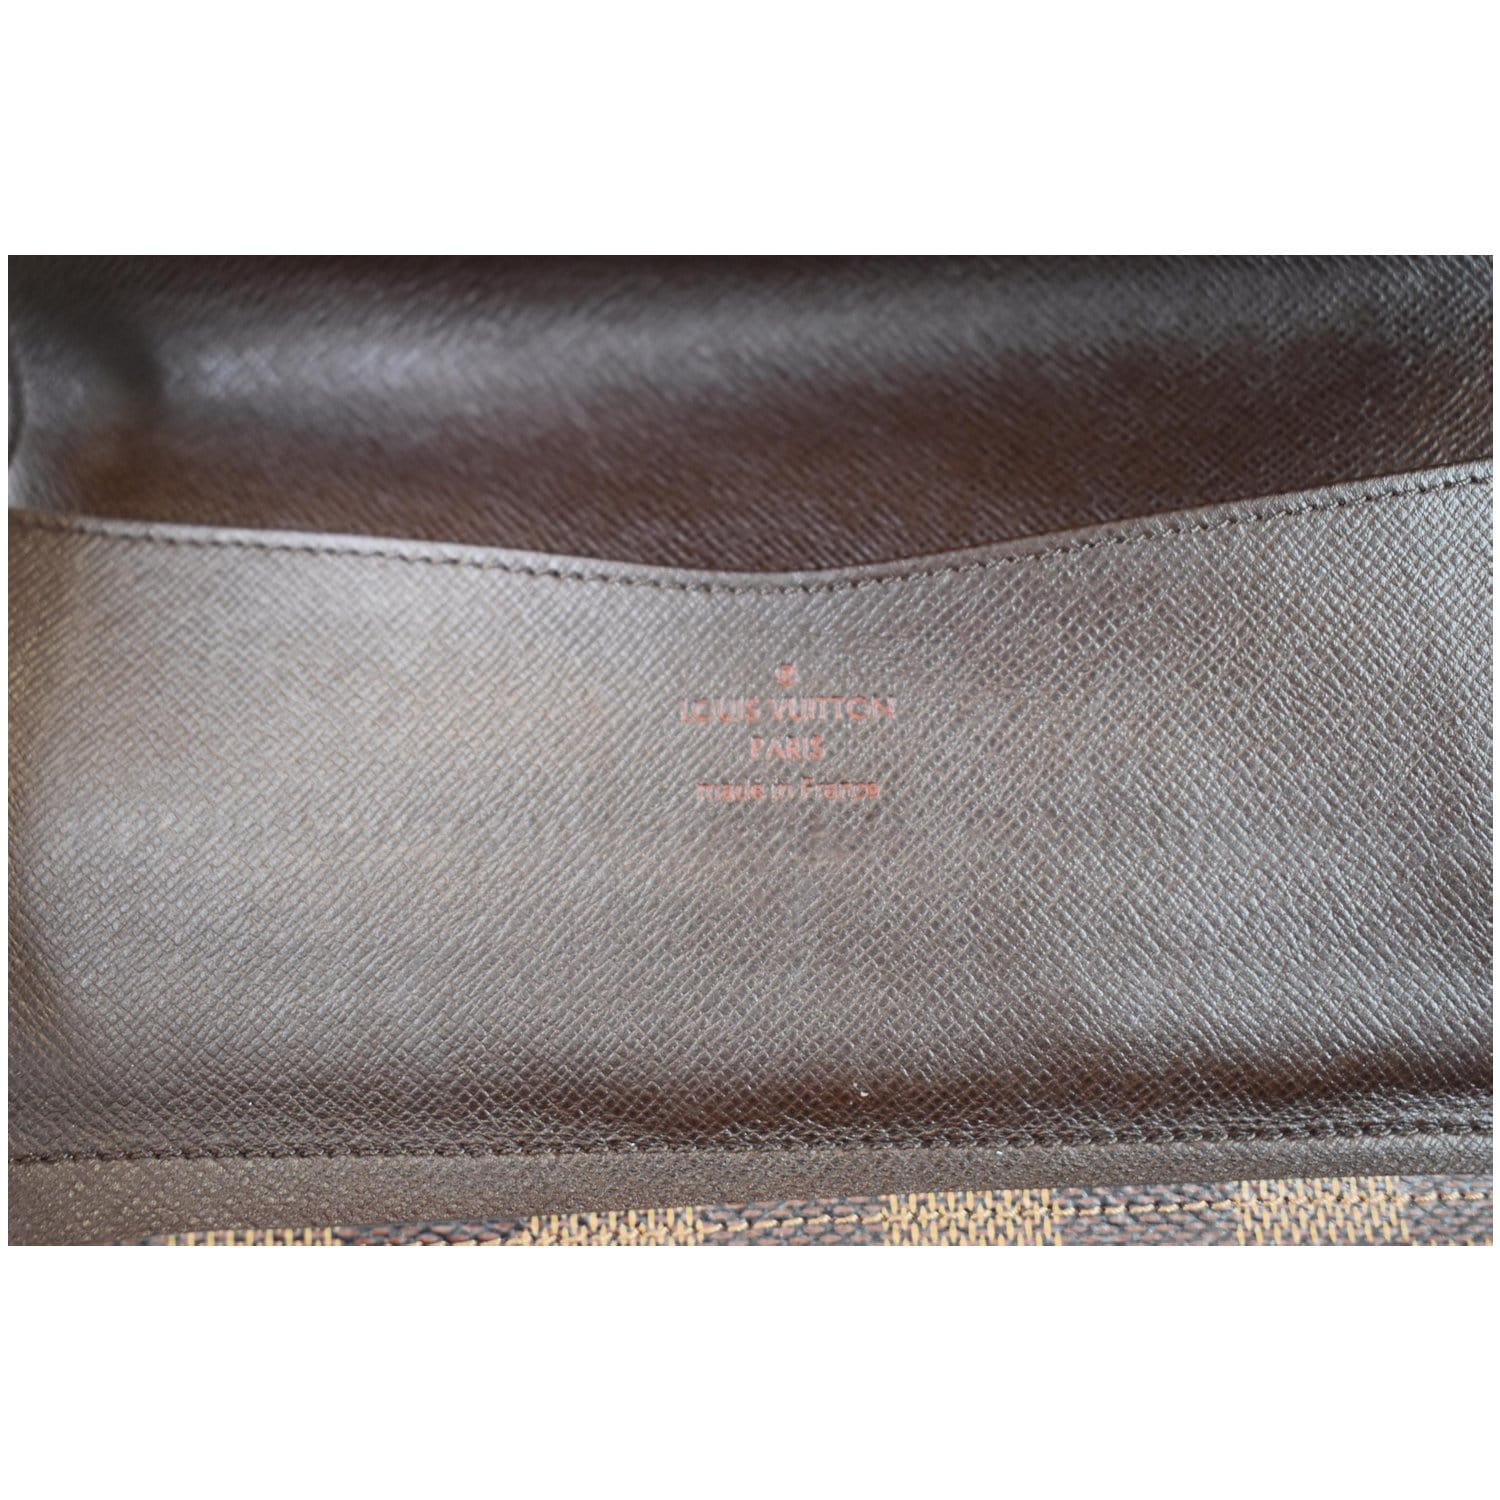 Louis Vuitton Damier Ebene Square Buckle Belt Size 80/32(4US) - The Purse  Ladies